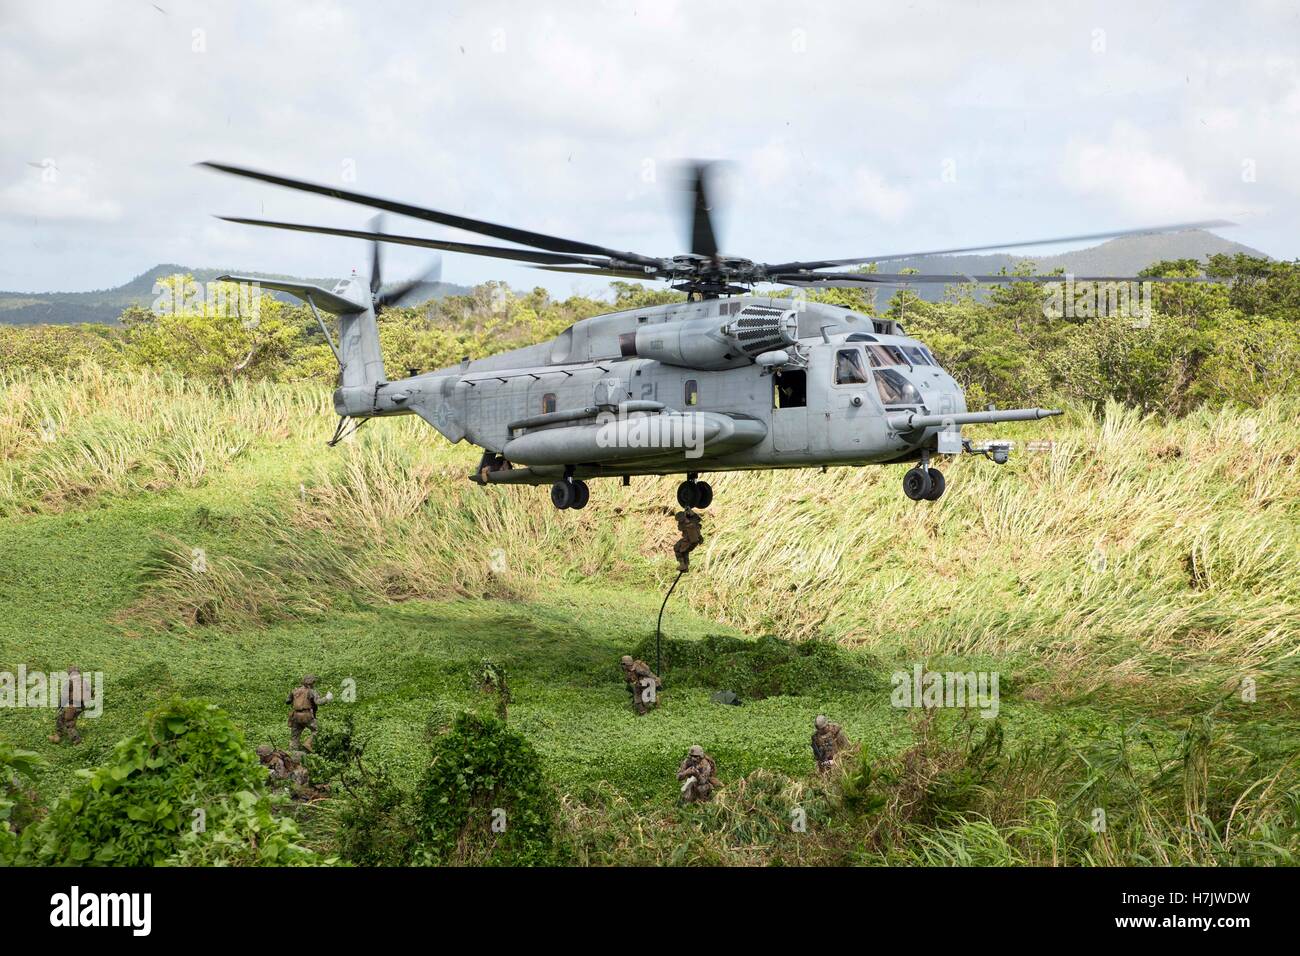 Des soldats américains descendre en rappel descendre d'un hélicoptère CH-53 Super Stallion en otage lors d'un scénario de formation au village de formation Central Area 18 juillet 2014, à Okinawa, au Japon. Banque D'Images